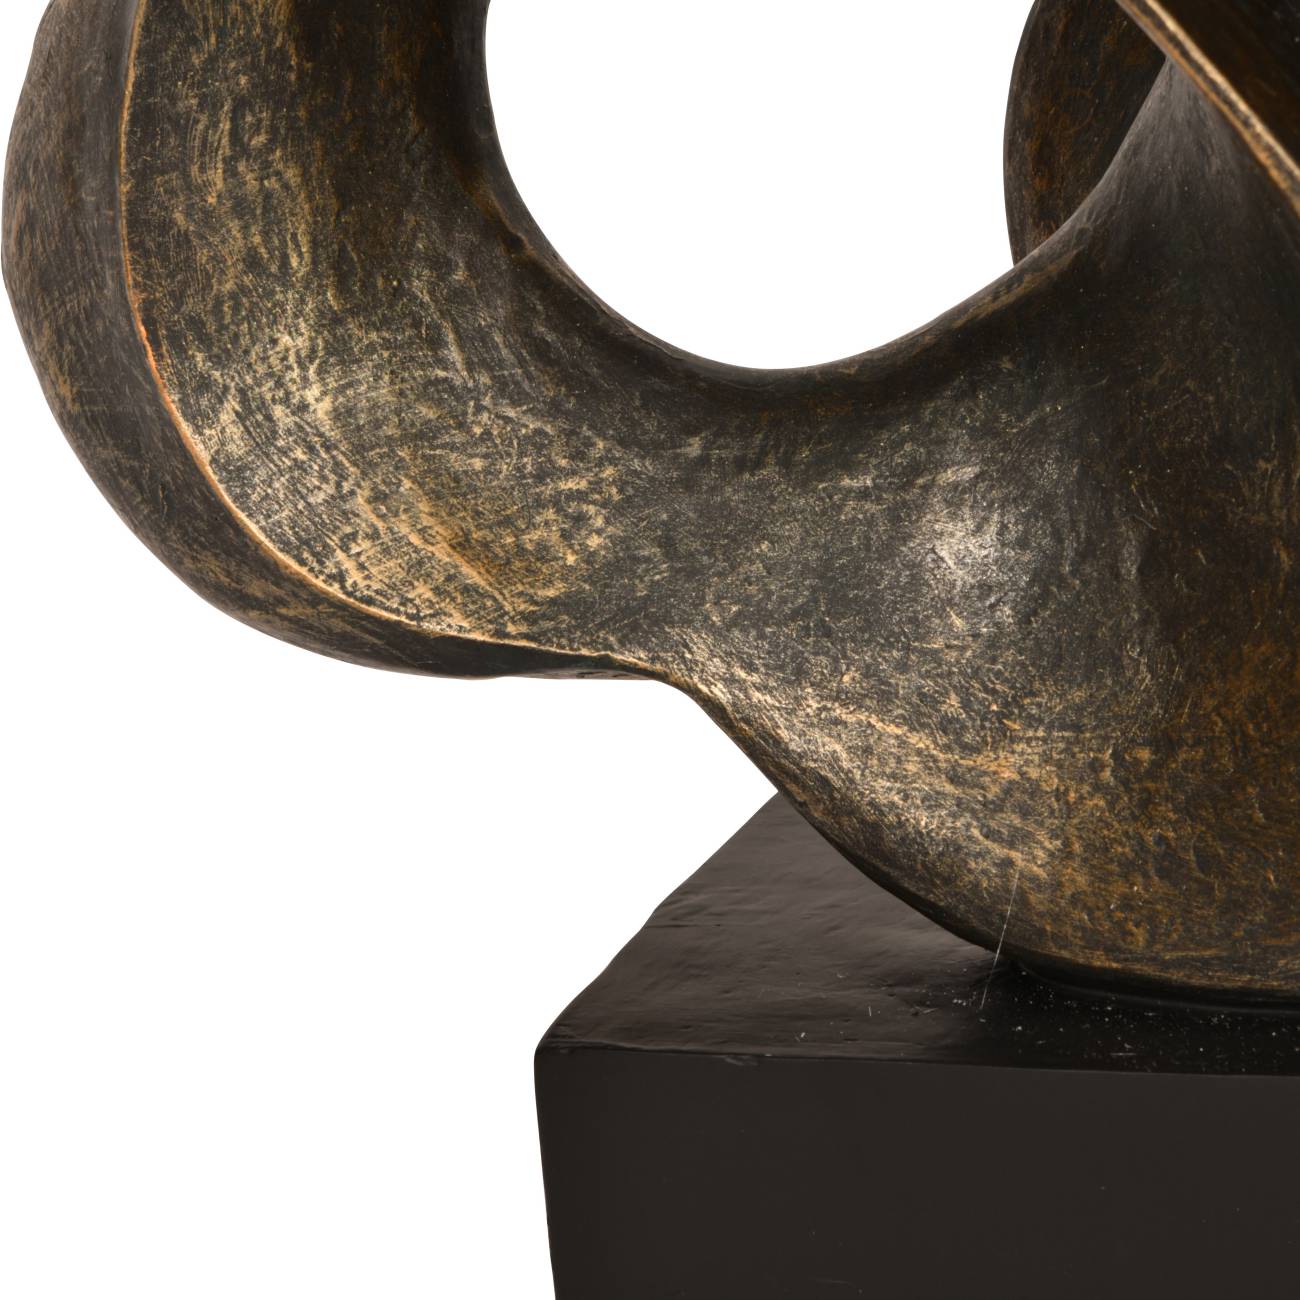 Remus Sculpture Rough Bronze